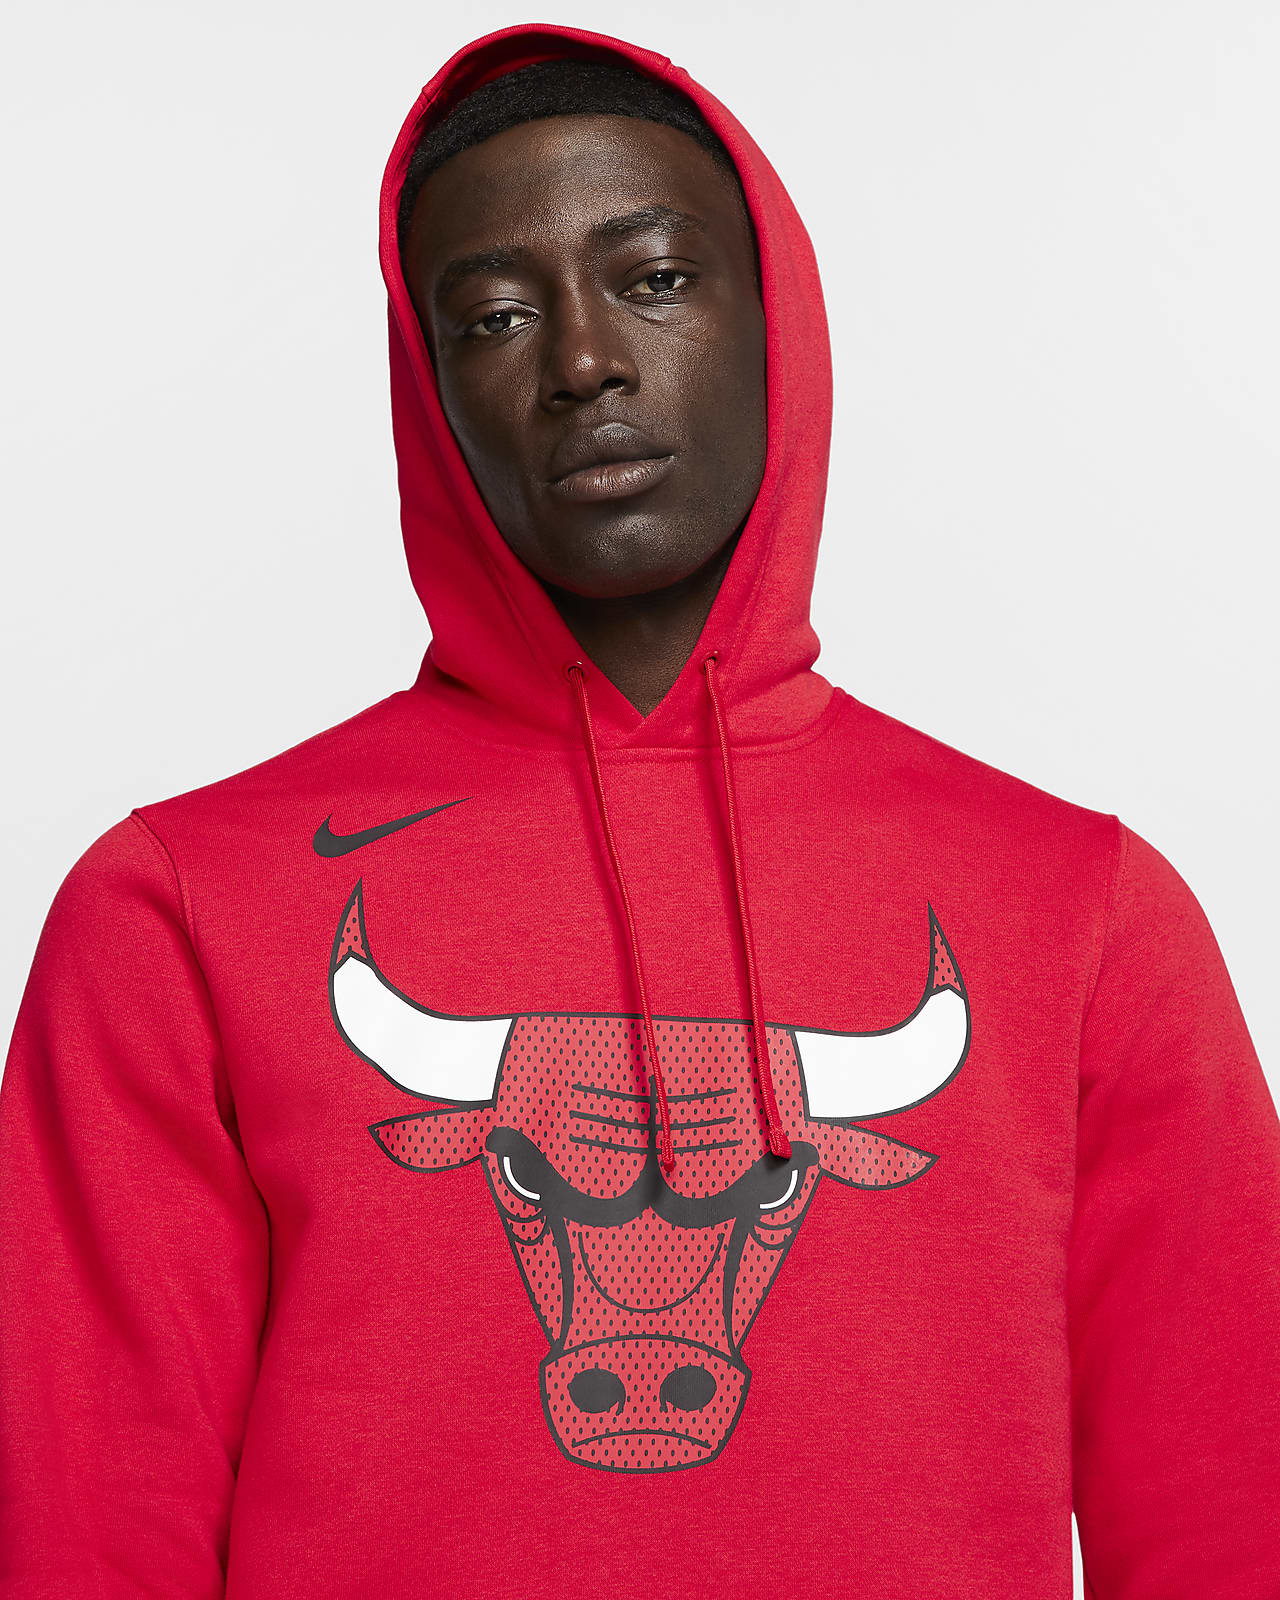 bulls hoodie nike